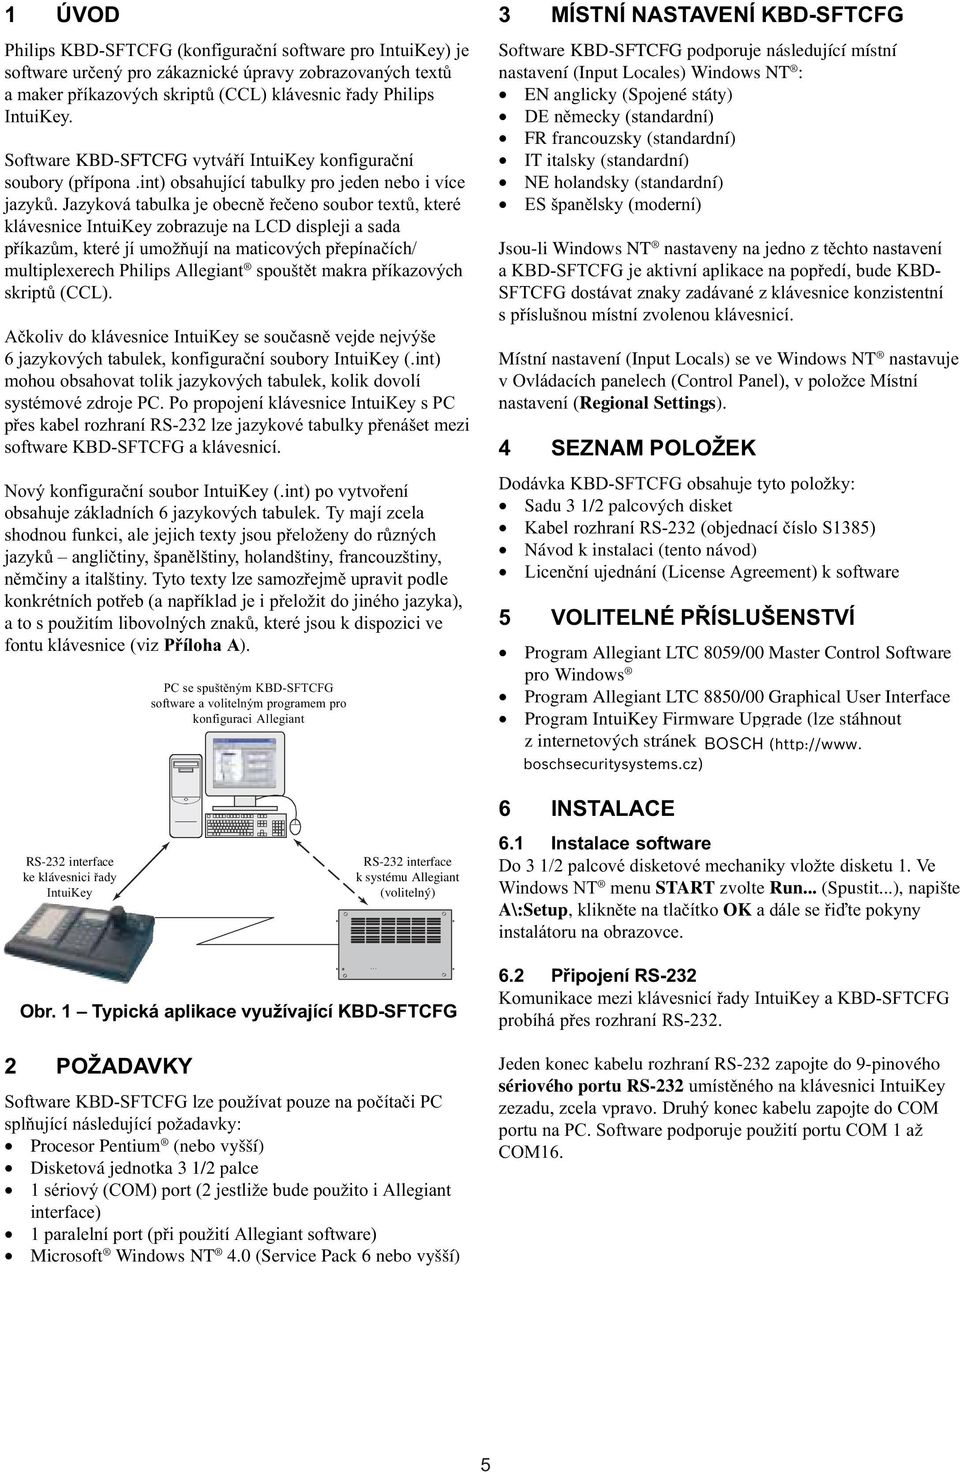 Jazyková tabulka je obecnì øeèeno soubor textù, které klávesnice IntuiKey zobrazuje na LCD displeji a sada pøíkazùm, které jí umožòují na maticových pøepínaèích/ multiplexerech Philips Allegiant